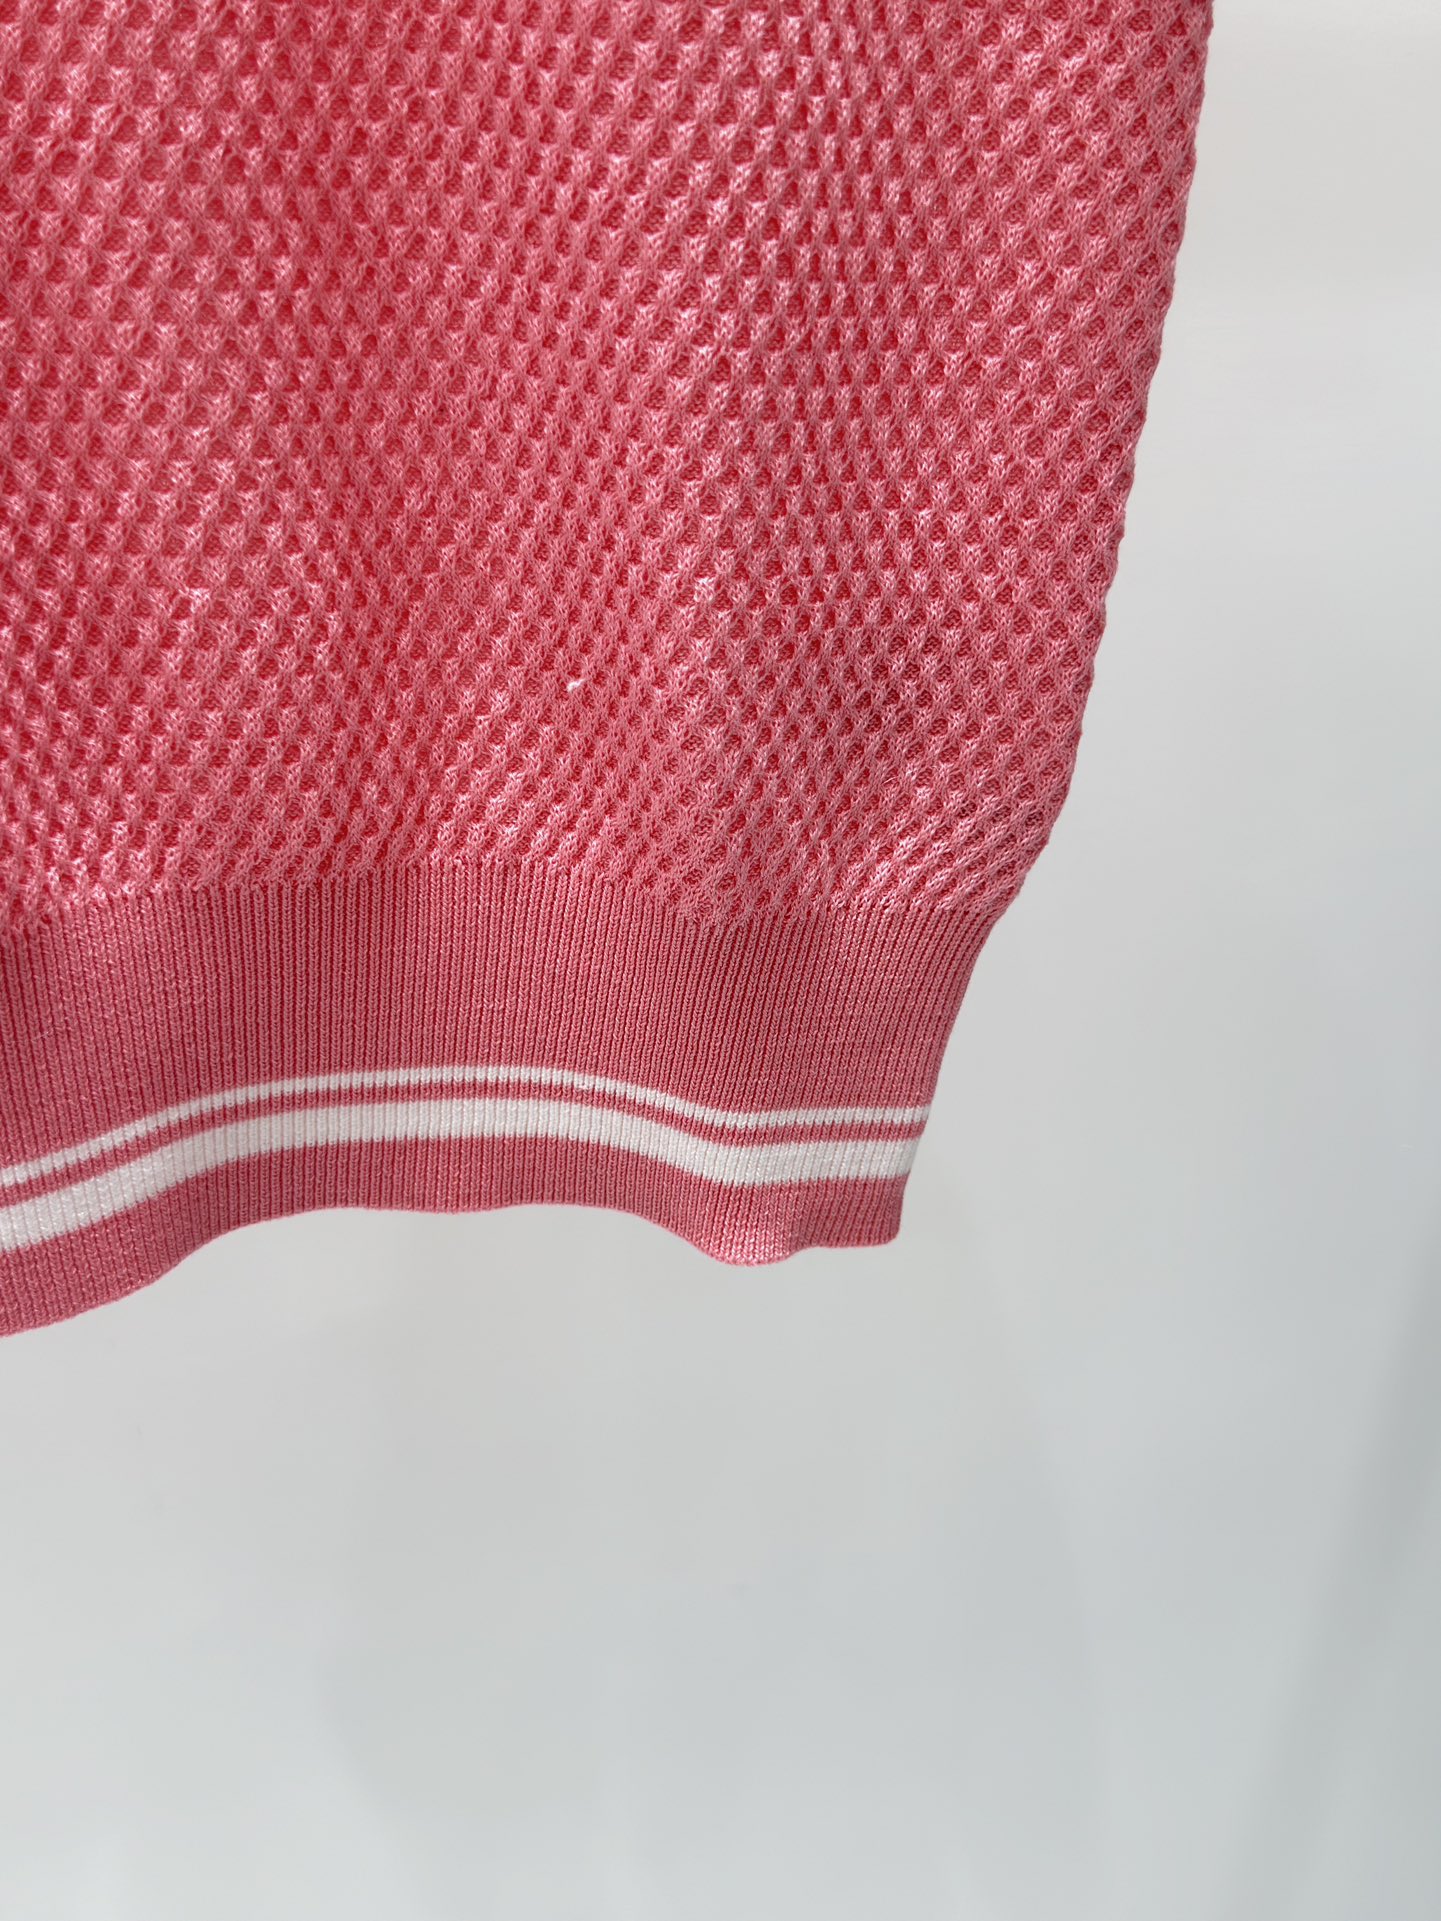 3066 2024 été marque même Style pull rose blanc à manches courtes col rond femmes vêtements de haute qualité femmes shun